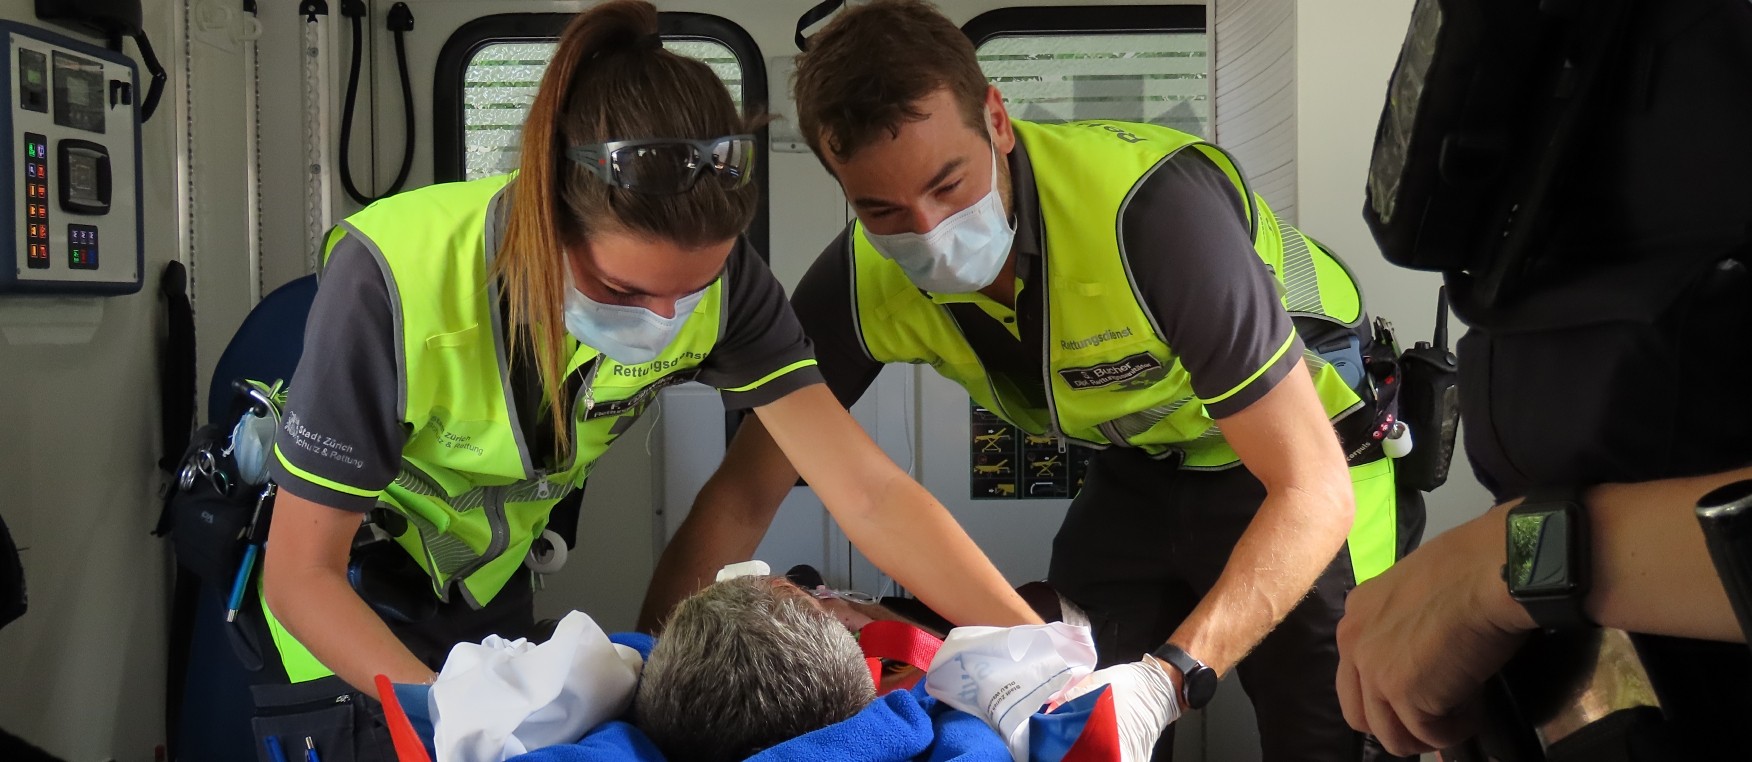 Rettungskräfte behandeln einen Patienten.